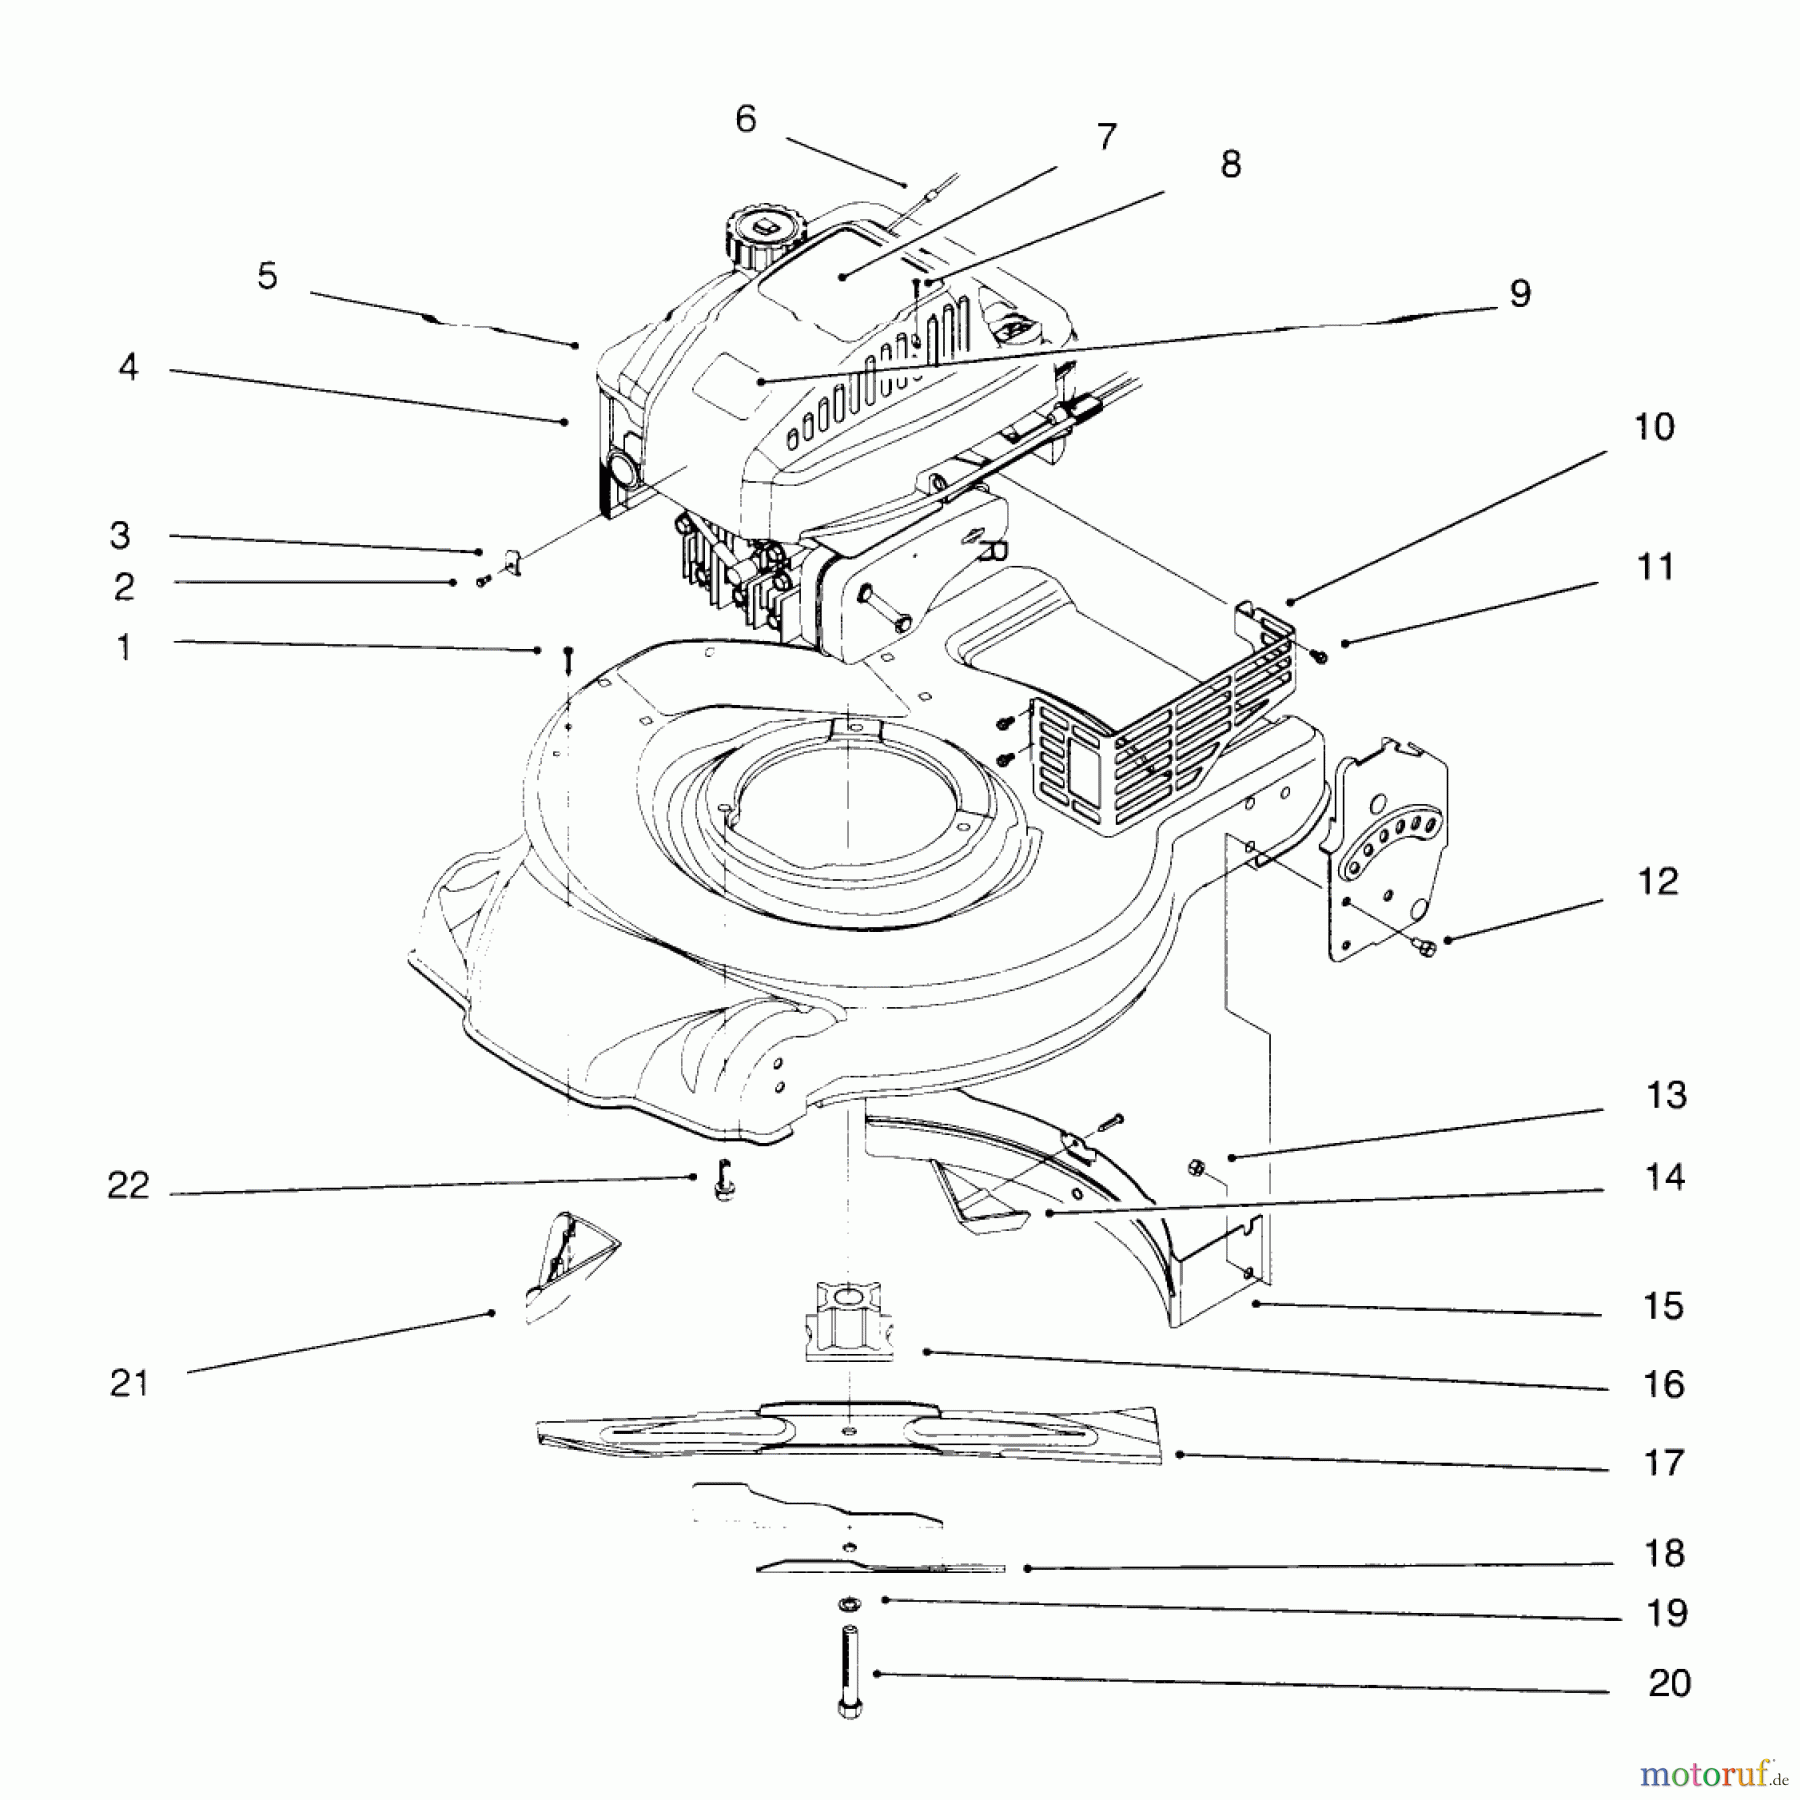  Toro Neu Mowers, Walk-Behind Seite 1 20453 - Toro Lawnmower, 1996 (6900001-6999999) ENGINE ASSEMBLY #2